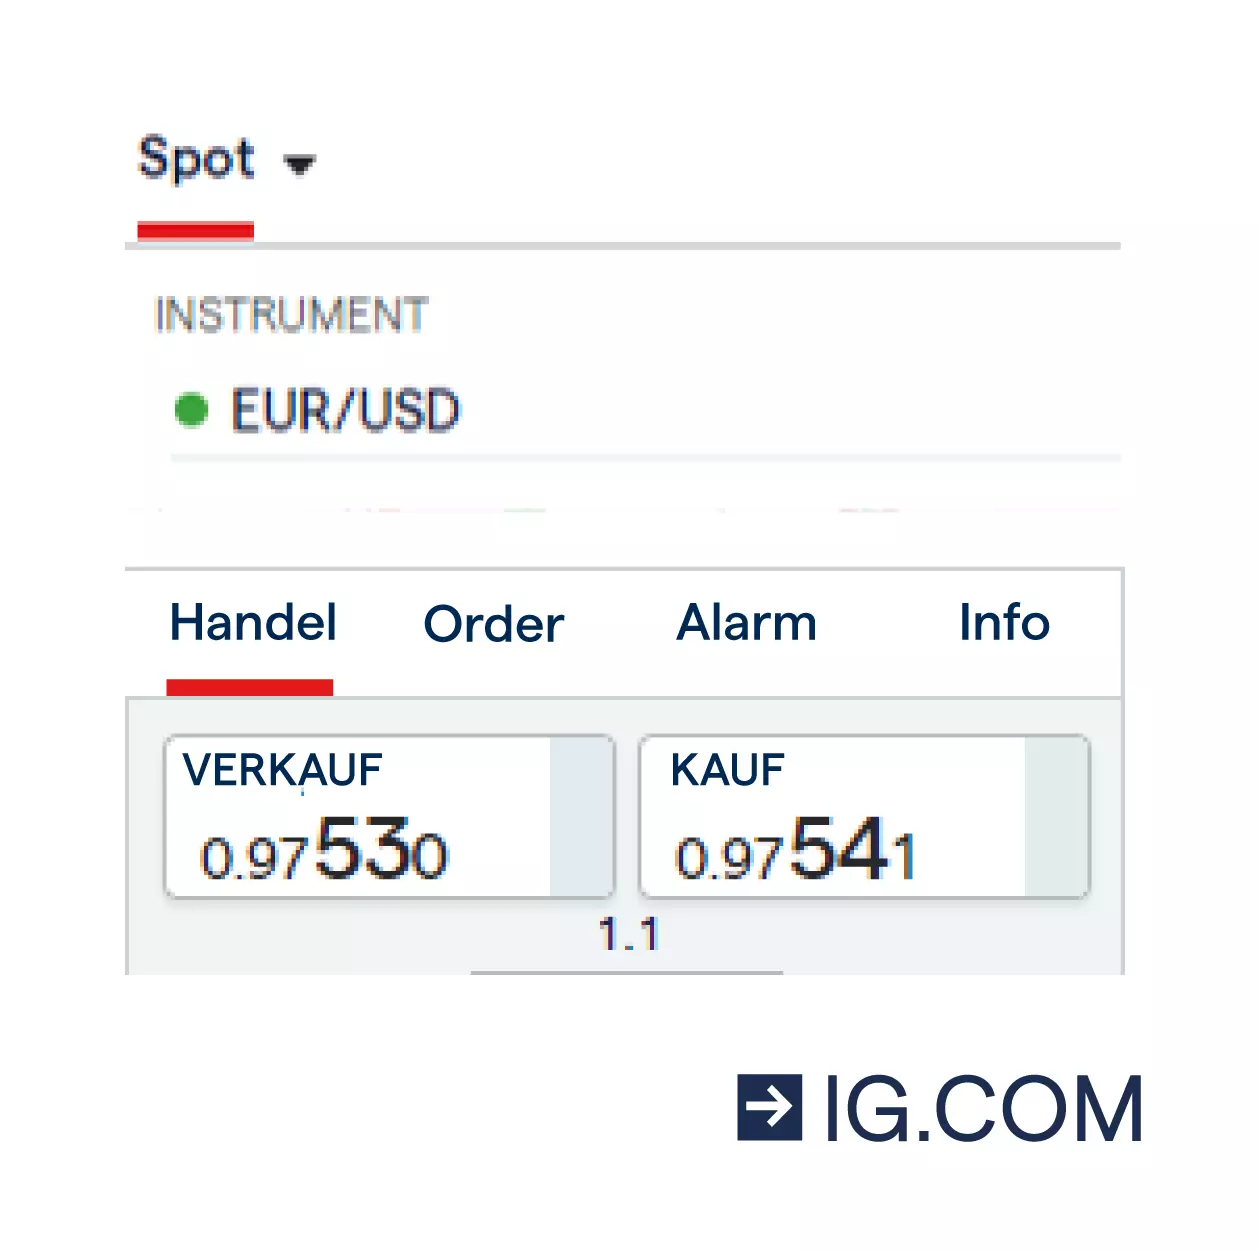 EUR/USD-Handelsticket mit Anzeige von Kauf- und Verkaufspreis des Währungspaares.